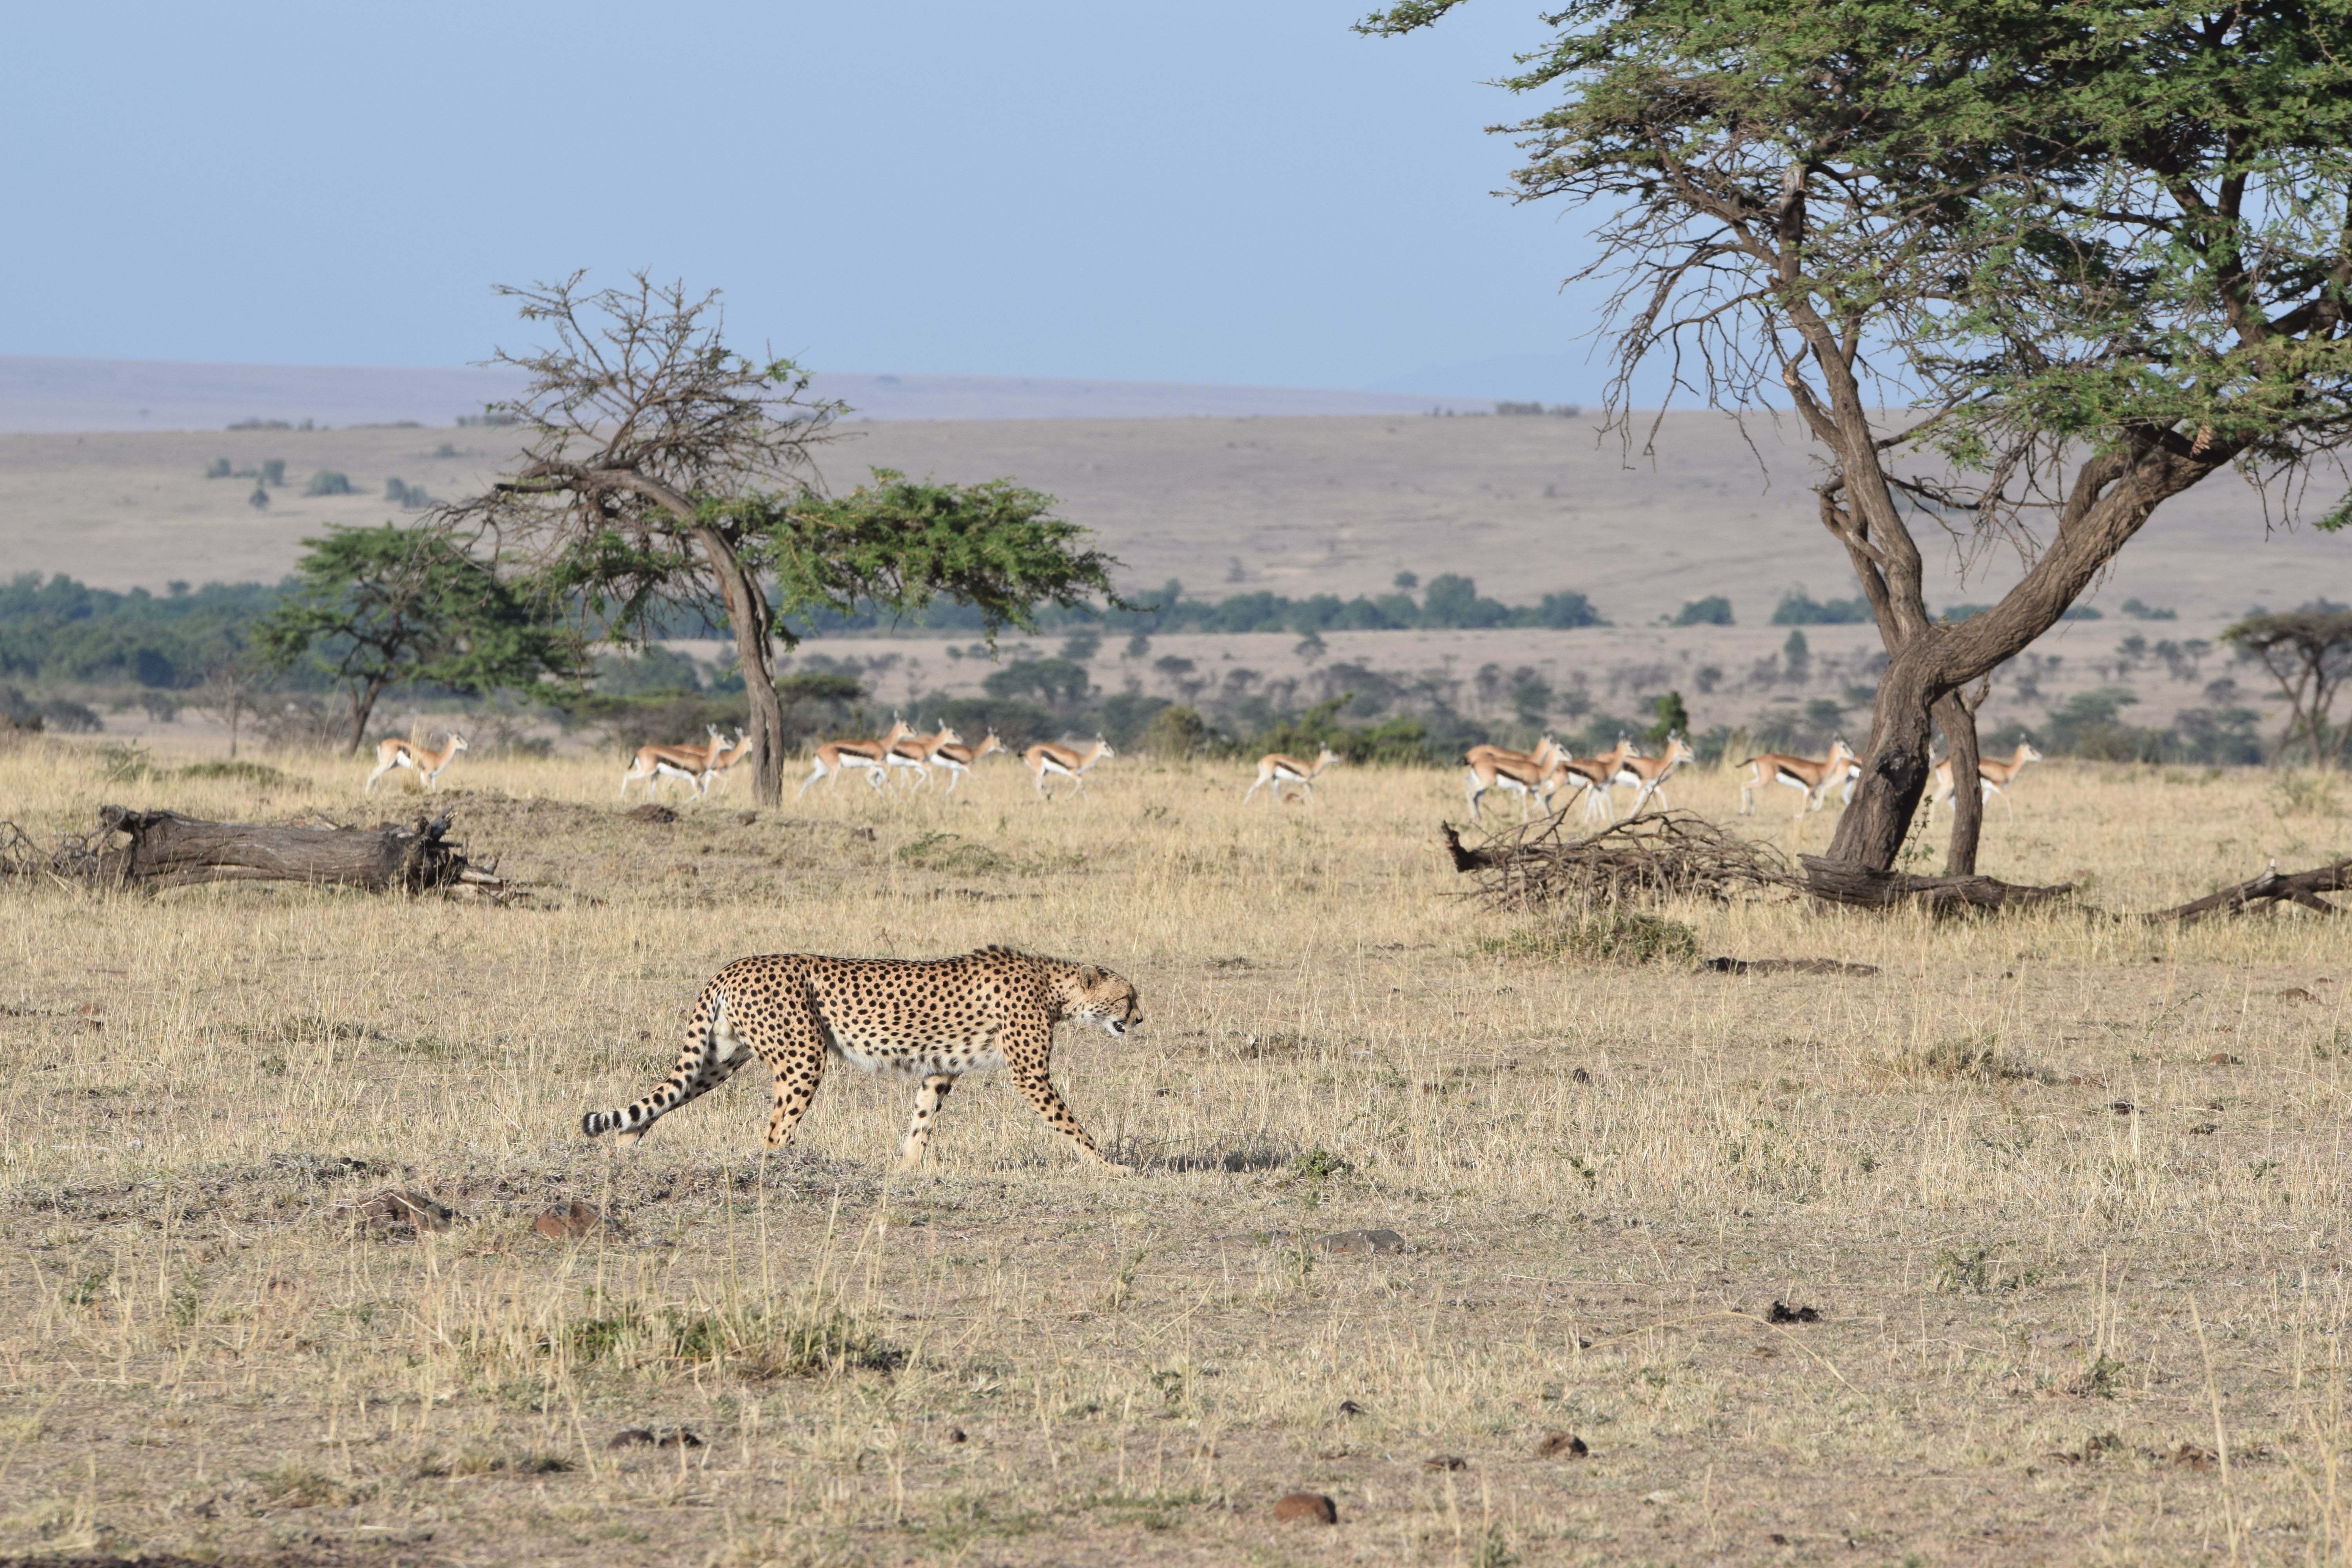 Our Stay At Sir Richard Branson's Mahali Mzuri In Maasai Mara, Kenya -- Kenya Safari - Kenya Safari Tours - Safari Kenya - Safari Trips In Kenya - Trip To Kenya - Kenyan Safari - How To Plan A Safari - Kenya Safari Guide - Kenya Wildlife - Kenya Trip - Travel To Kenya - Guide To Kenya - Maasai Mara